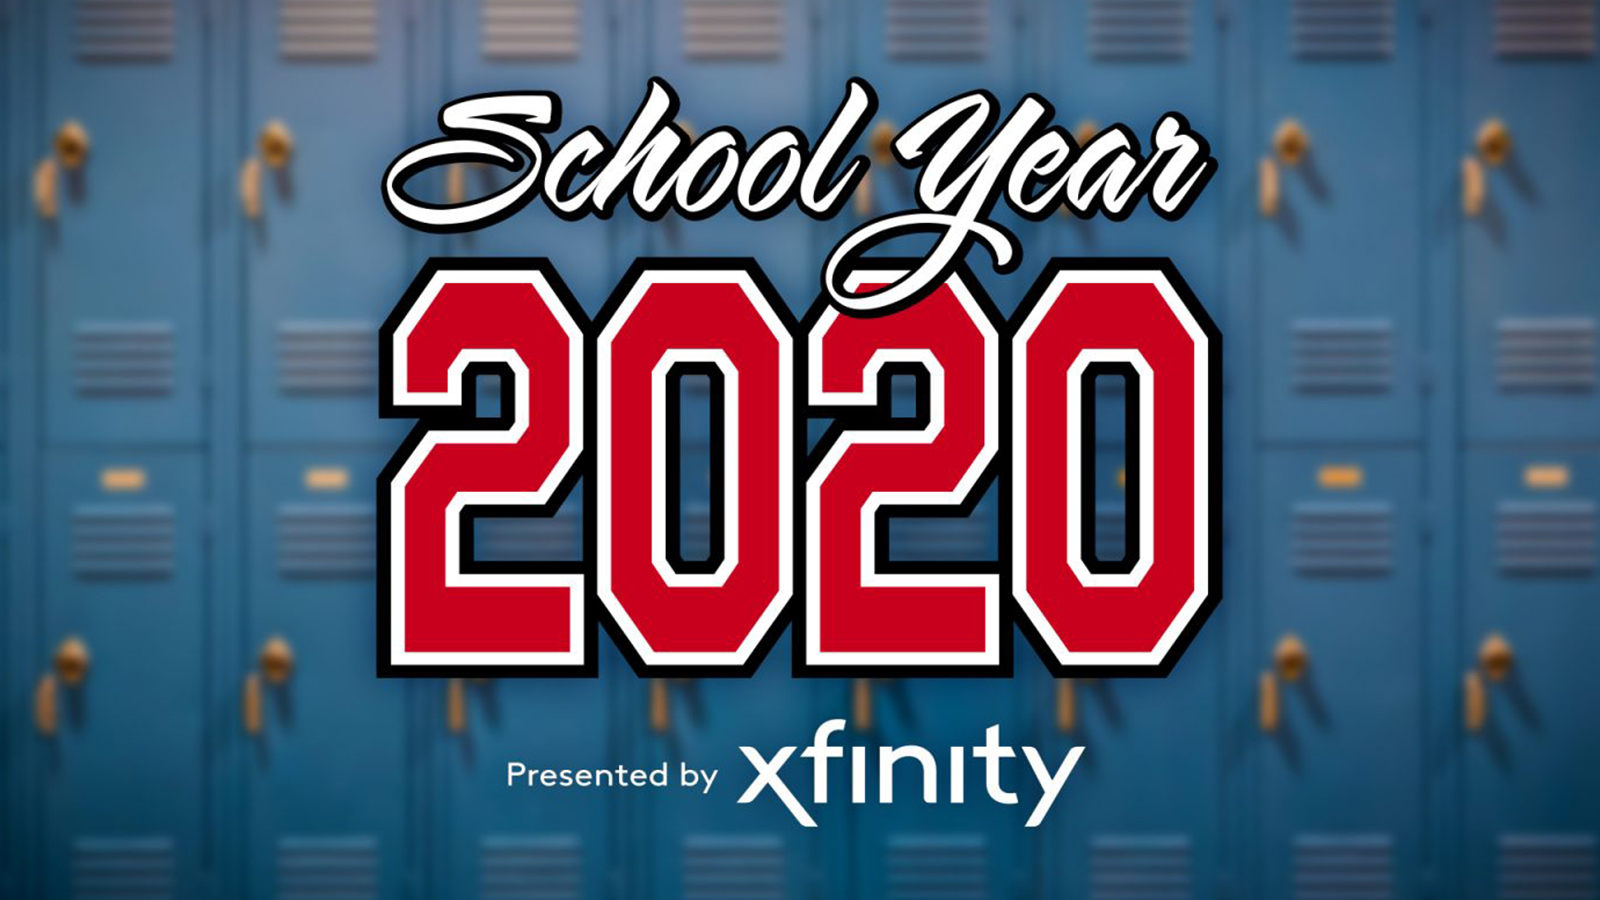 School year 2020 presented by Xfinity.